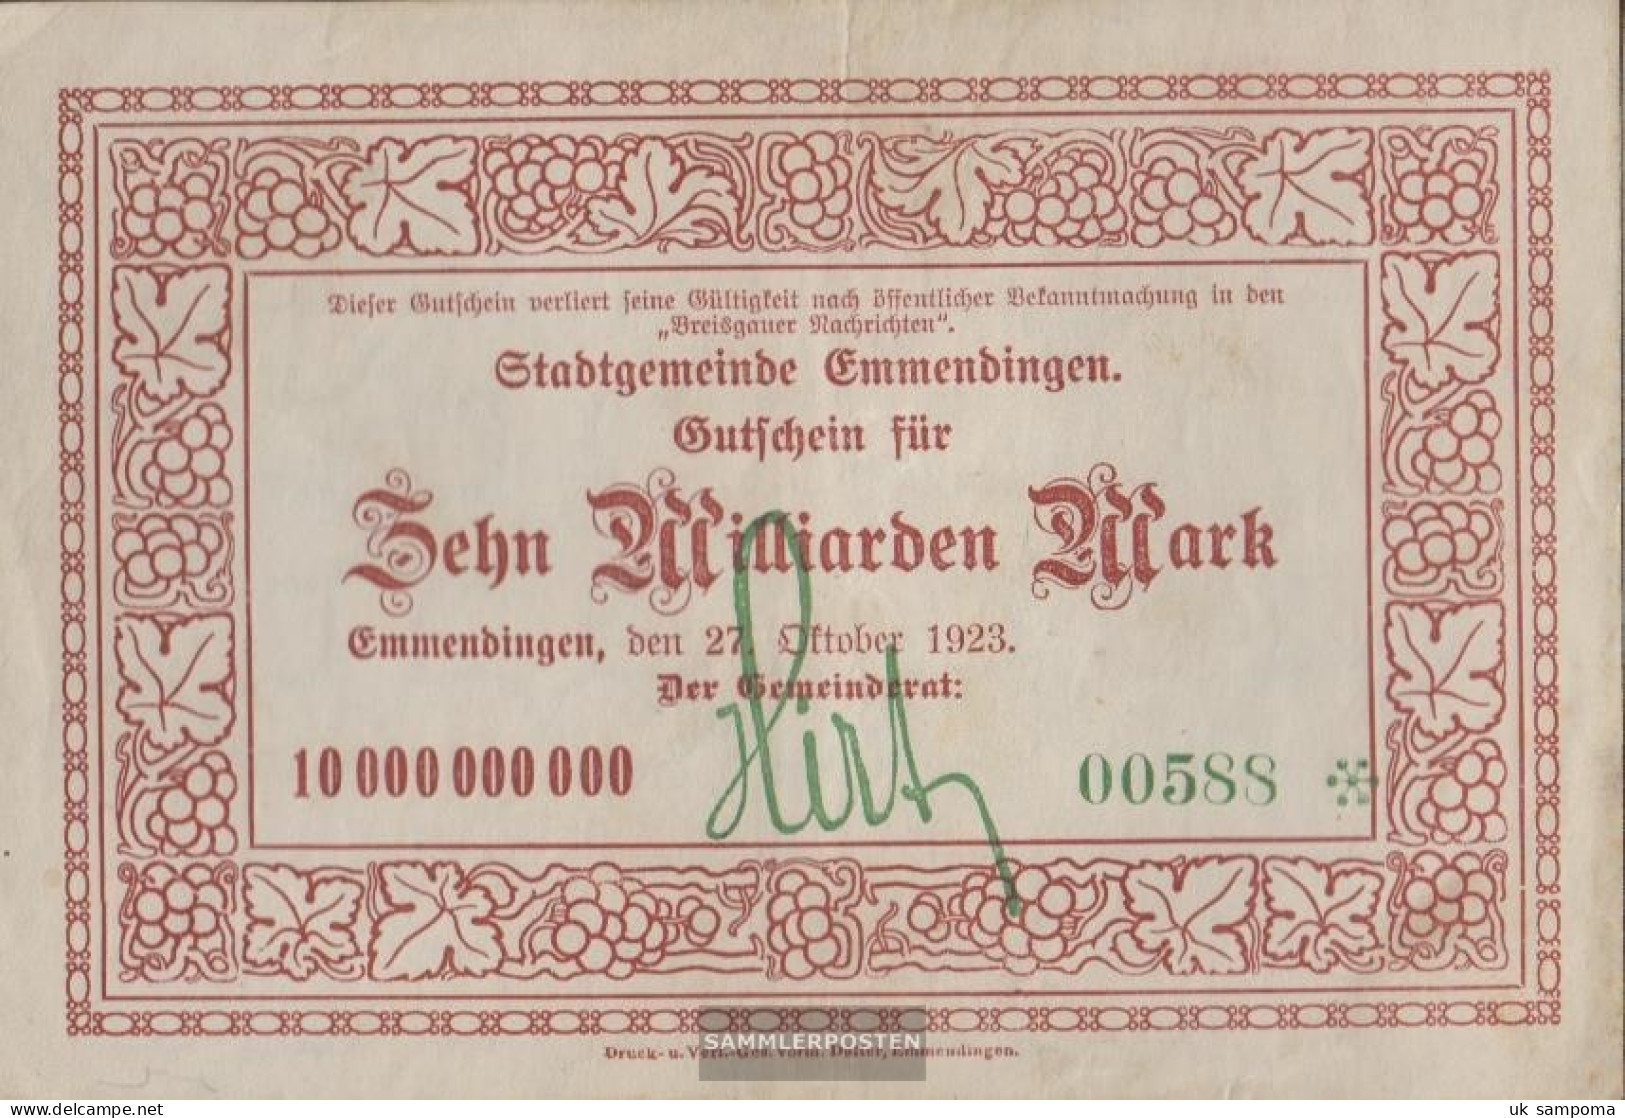 Emmendingen Inflationsgeld City Emmendingen Used (III) 1923 10 Billion Mark - 10 Milliarden Mark